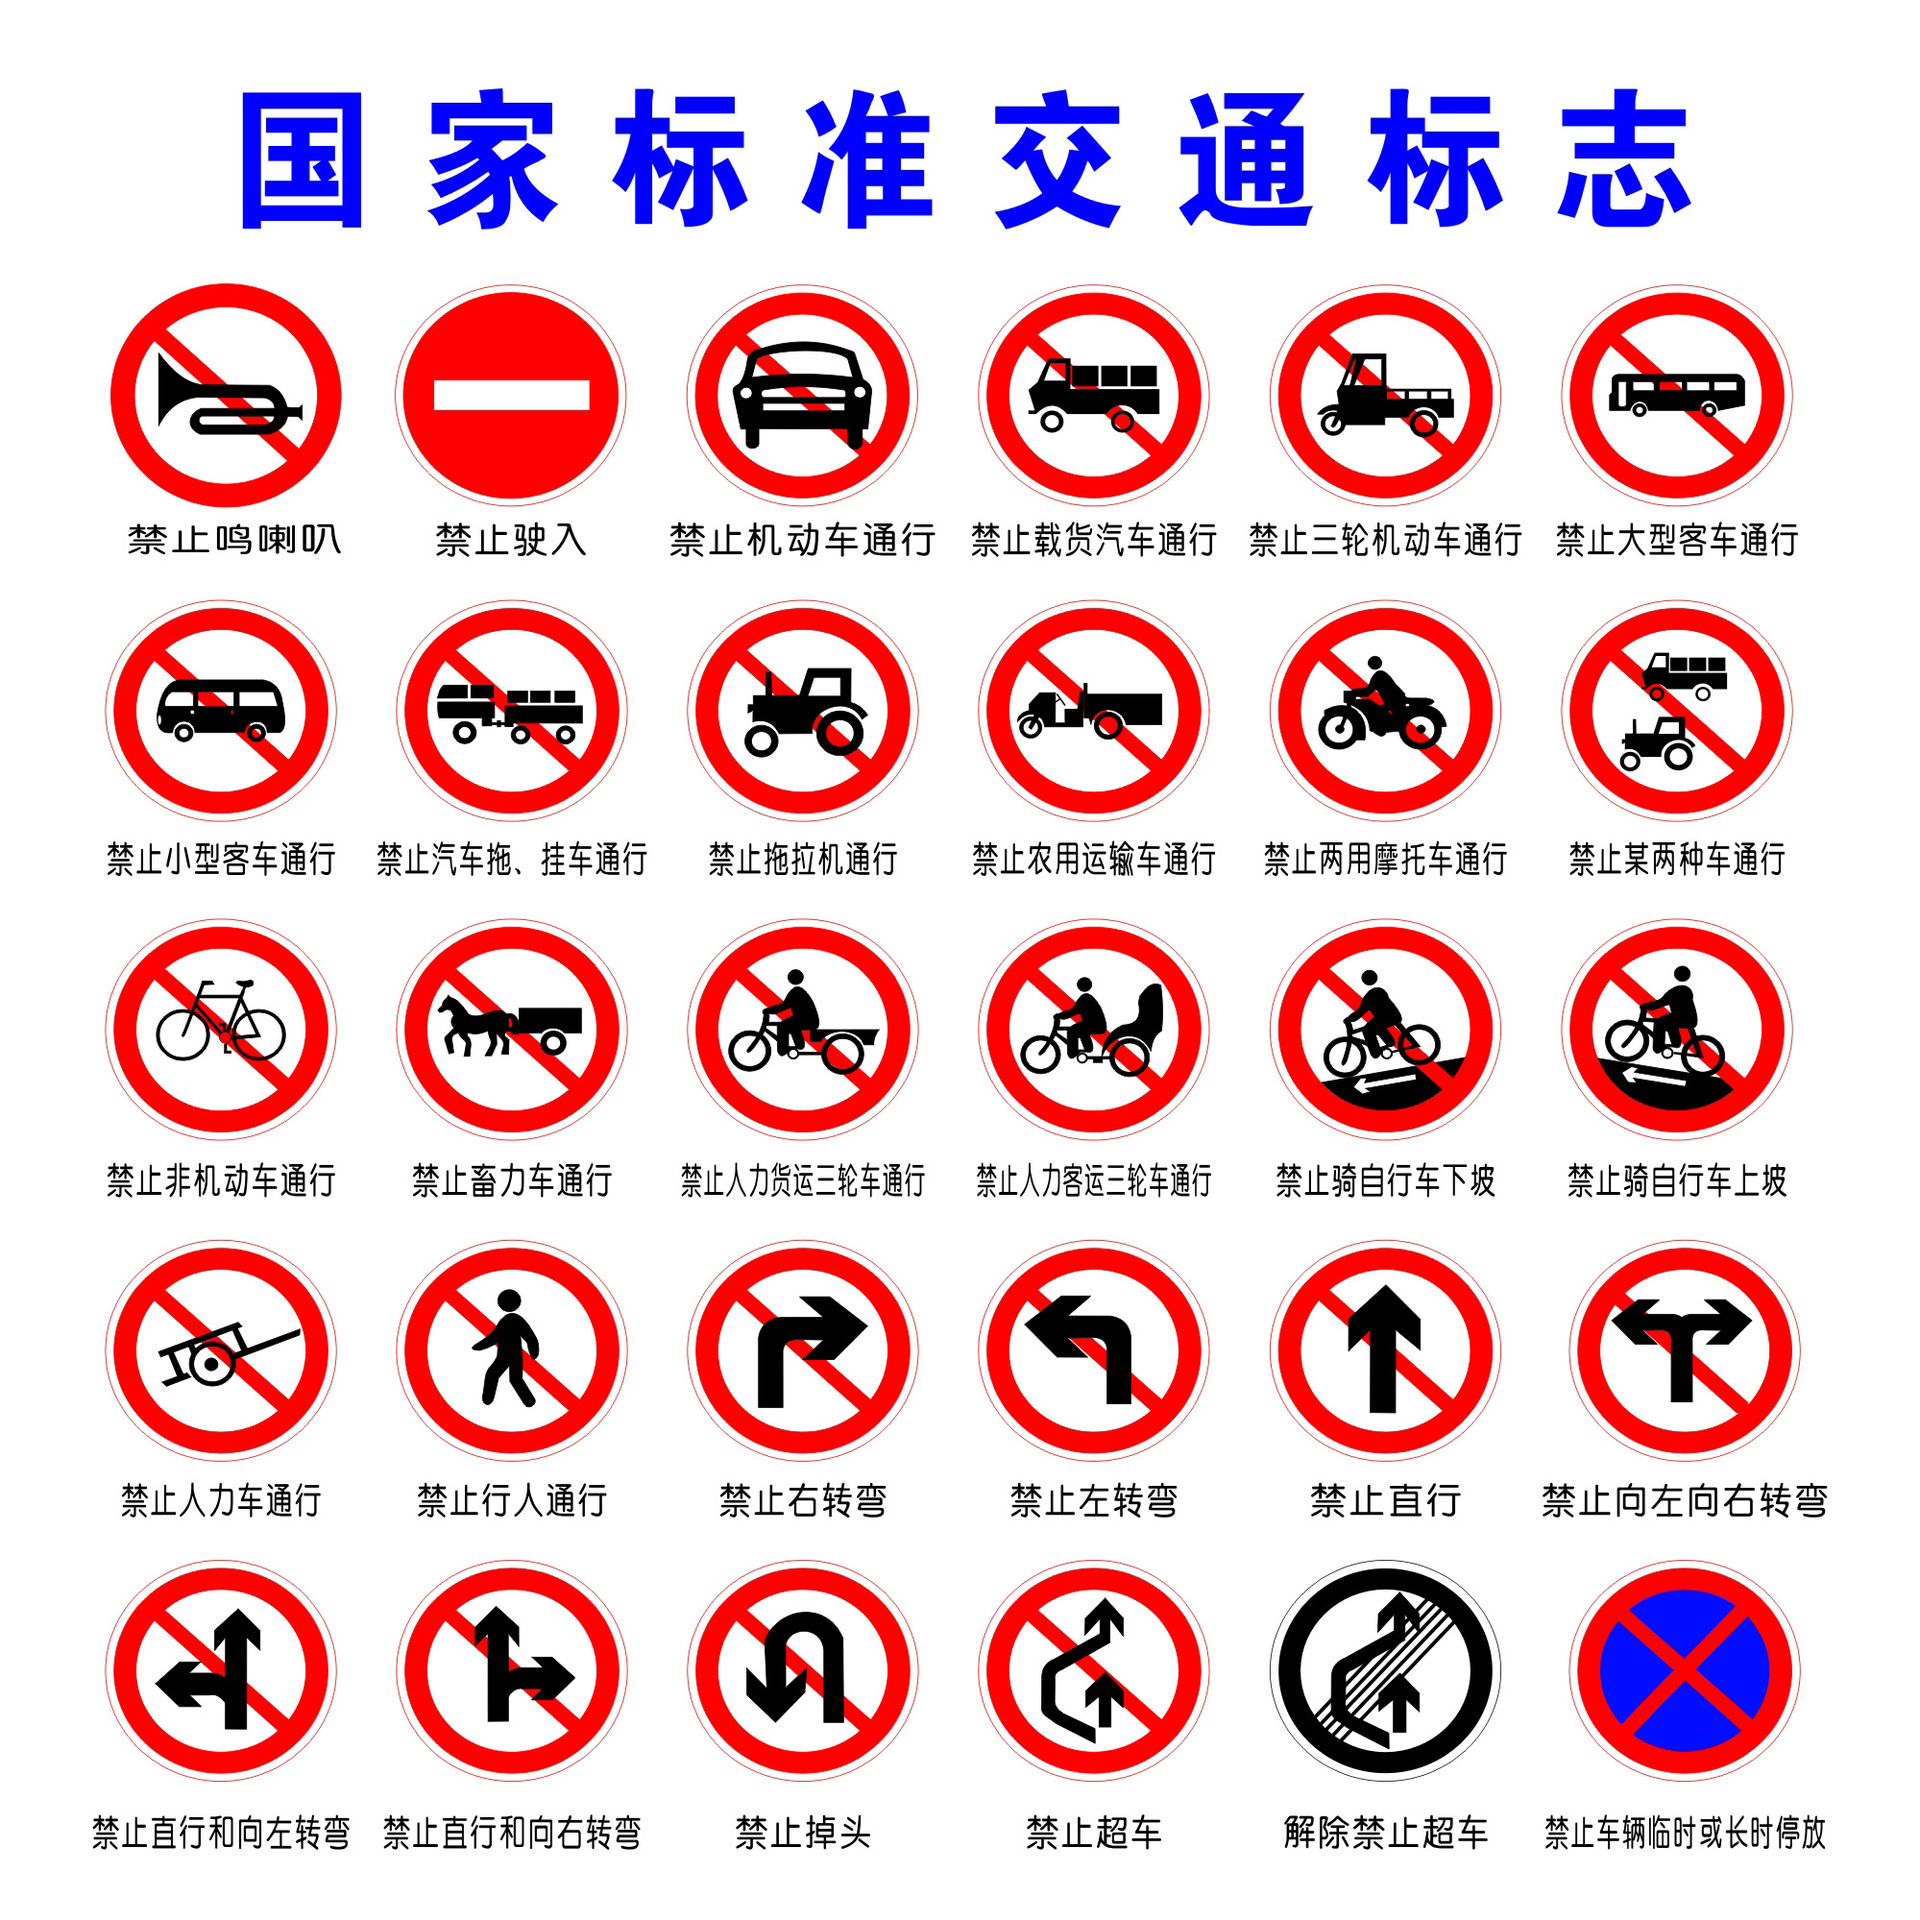 牌: 禁令标志主要用于道路两侧提醒行人和车辆禁止某些行为,常见标识